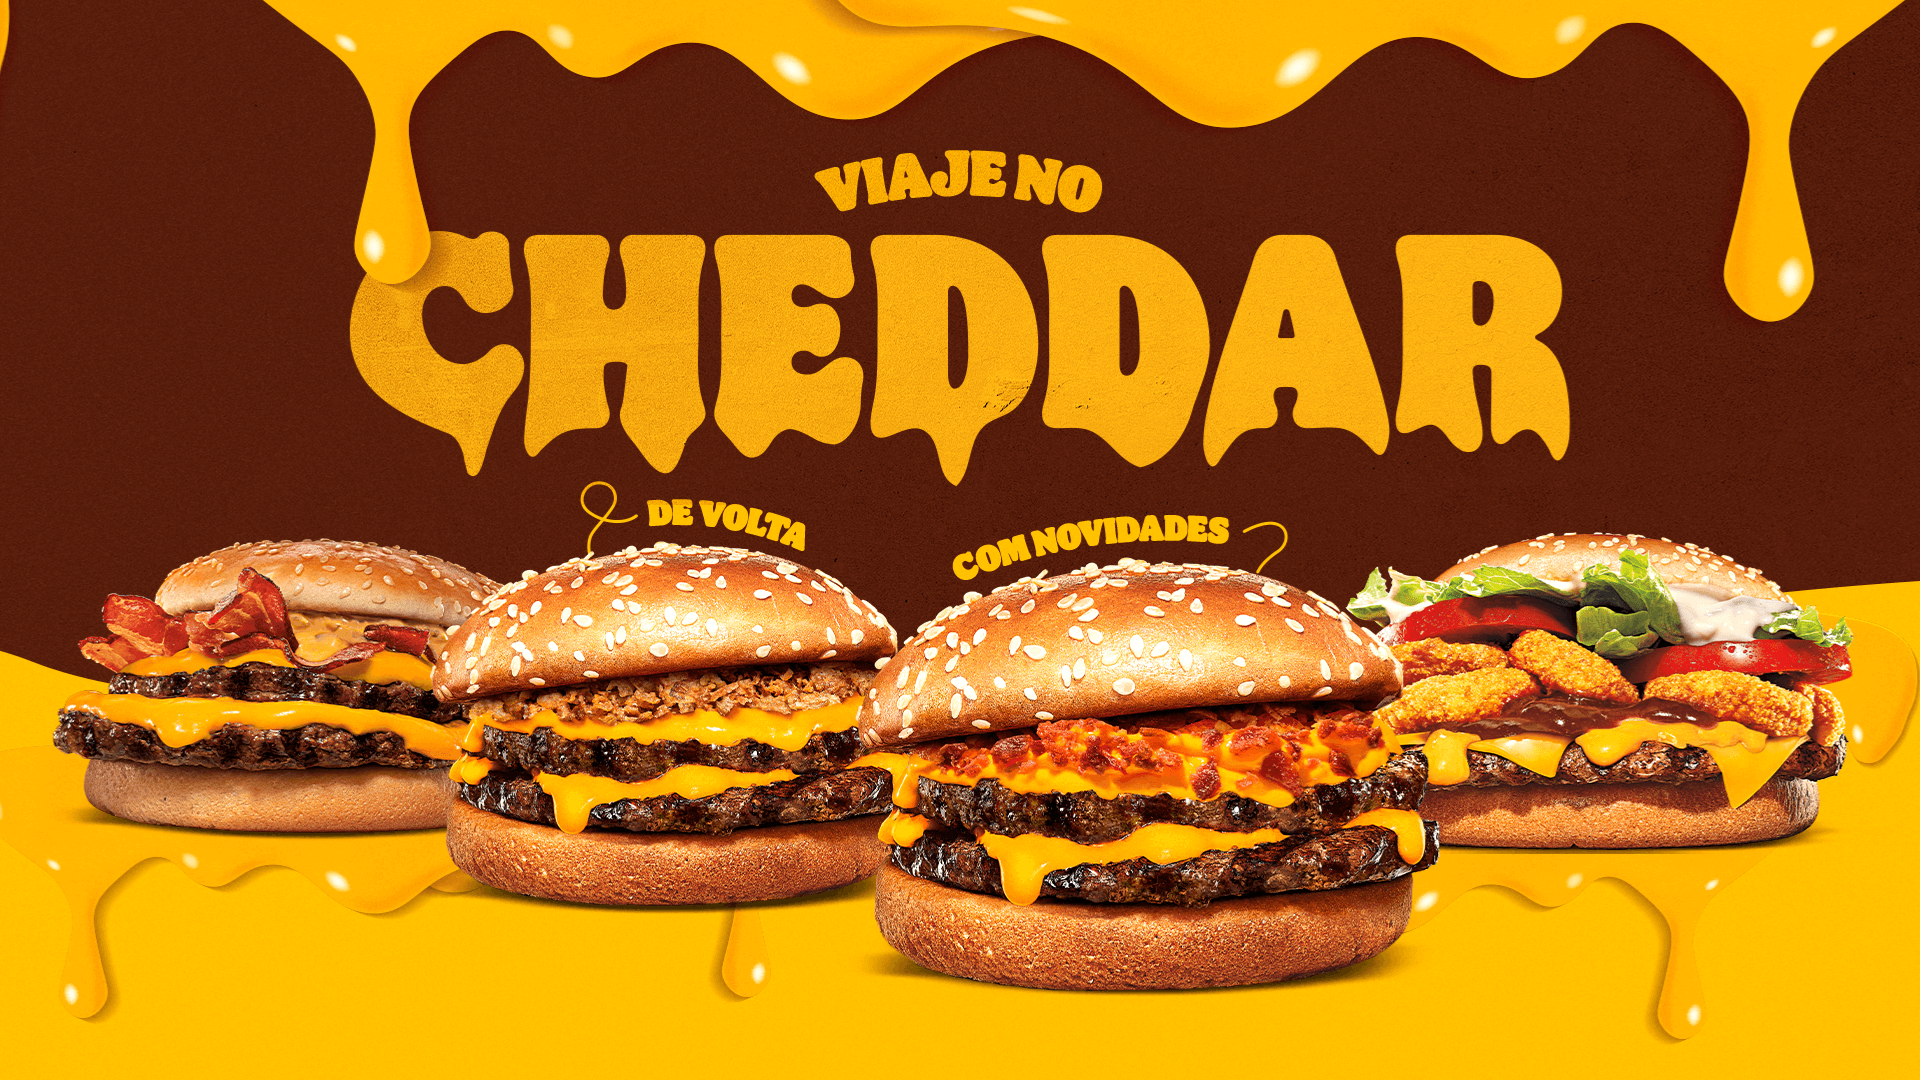 Burger King da Avenida Paulista tem ativação “cheddarliciosa” neste fim de semana